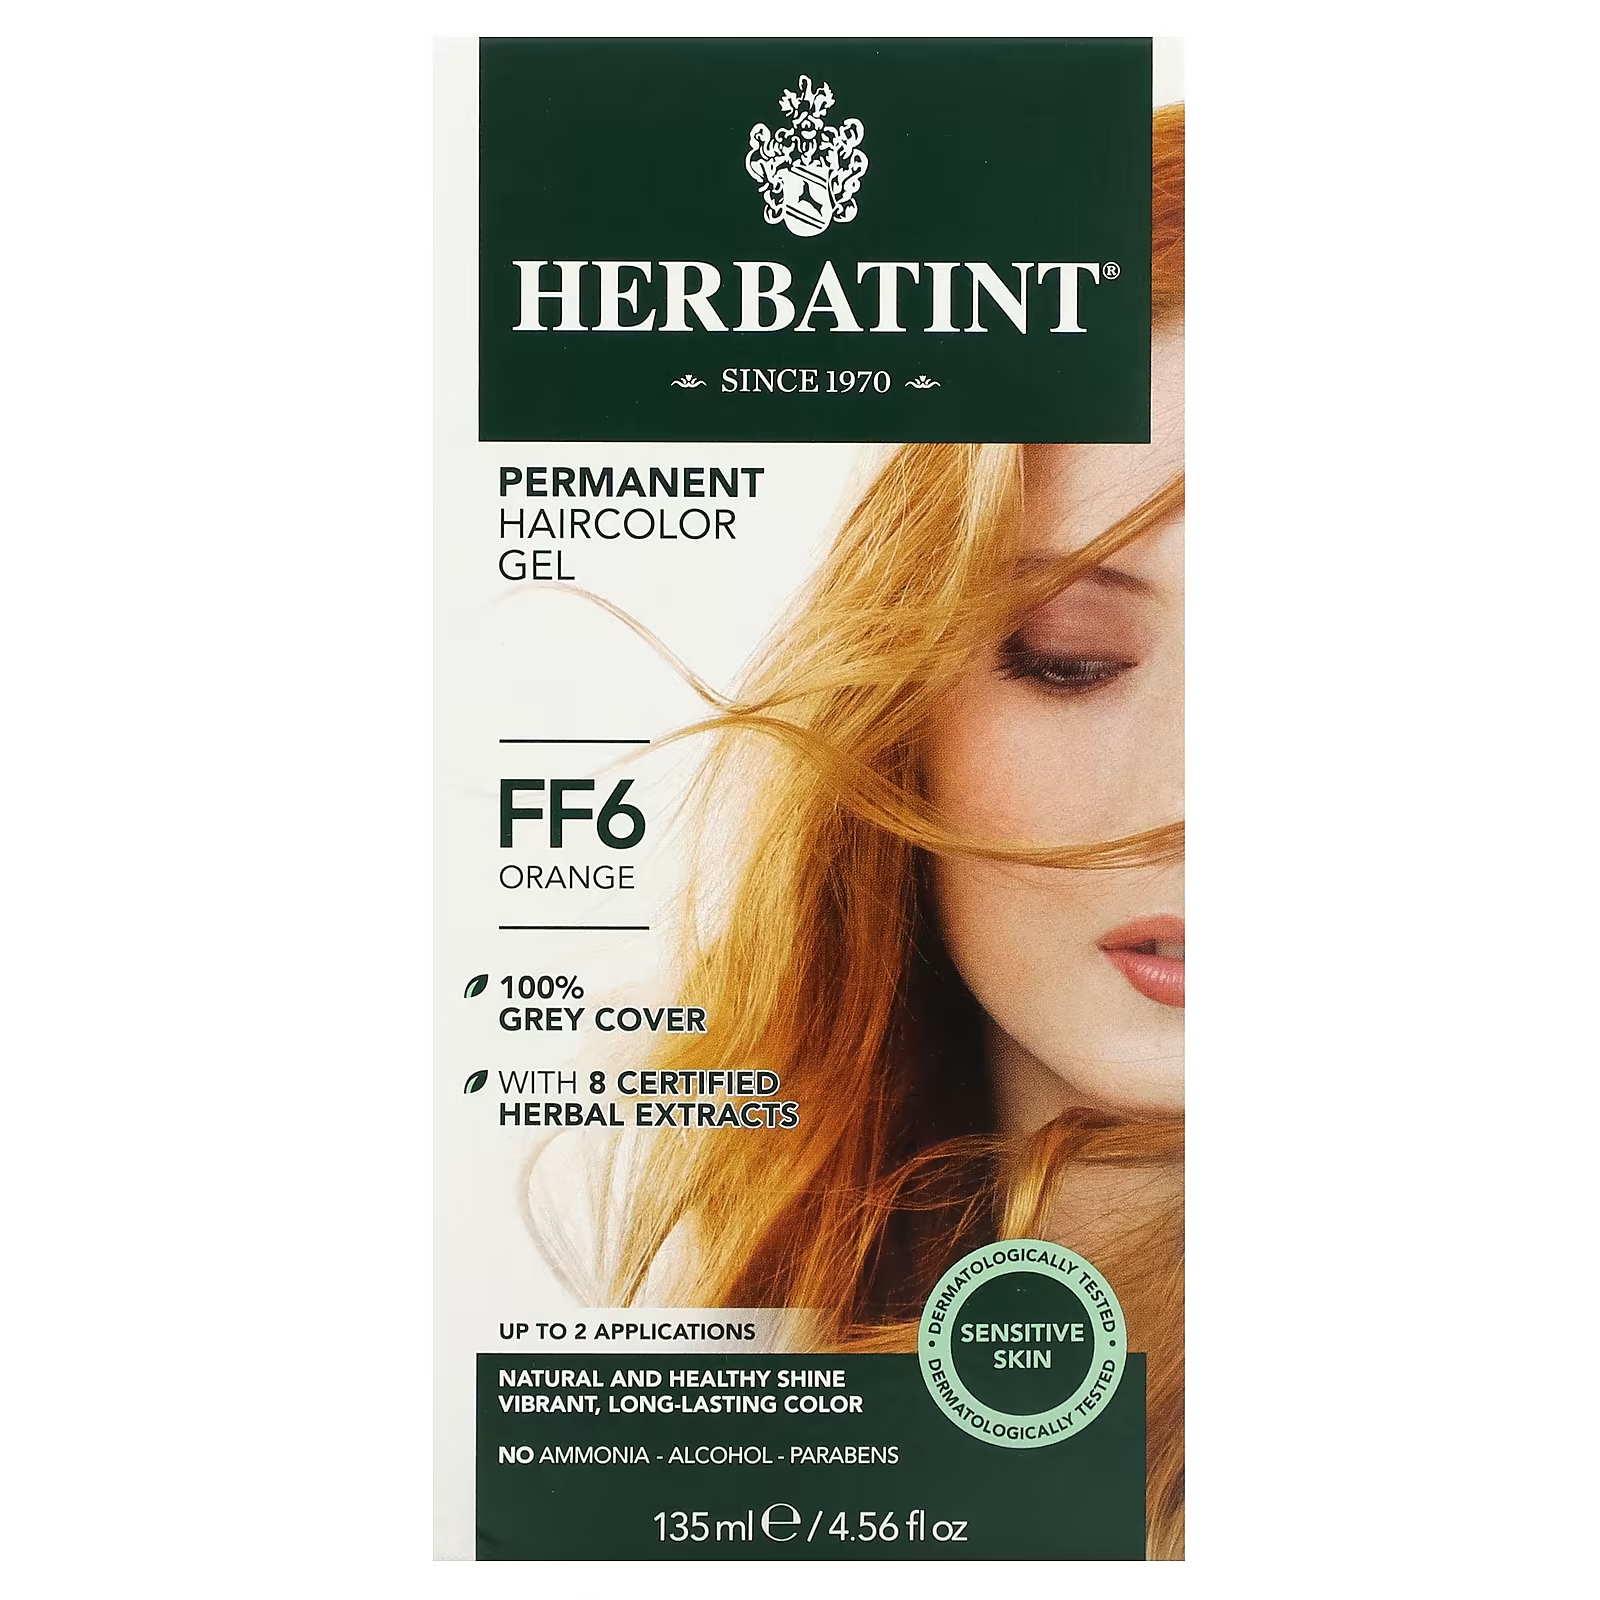 Гель-краска Herbatint Antica Herbavita для стойких волос оранжевый цвет FF6, 135мл